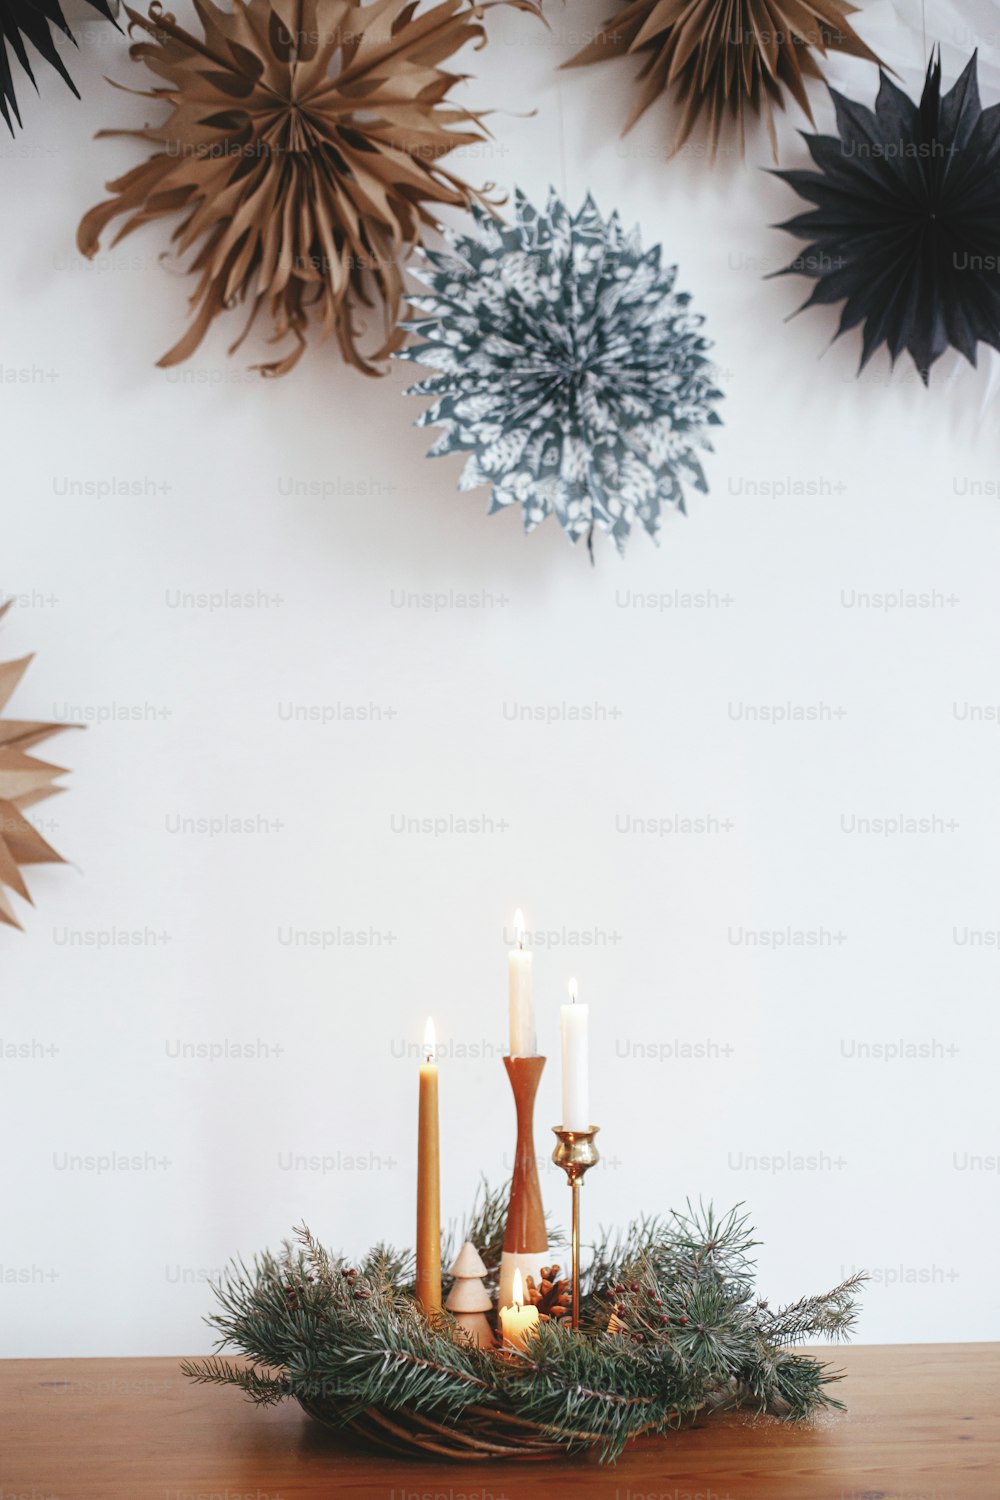 Couronne de Noël élégante avec des bougies et des décorations sur une table en bois sur fond de mur blanc avec des étoiles en papier suédois. Heure d’hiver atmosphérique. Avent des fêtes, hygge festif scandinave